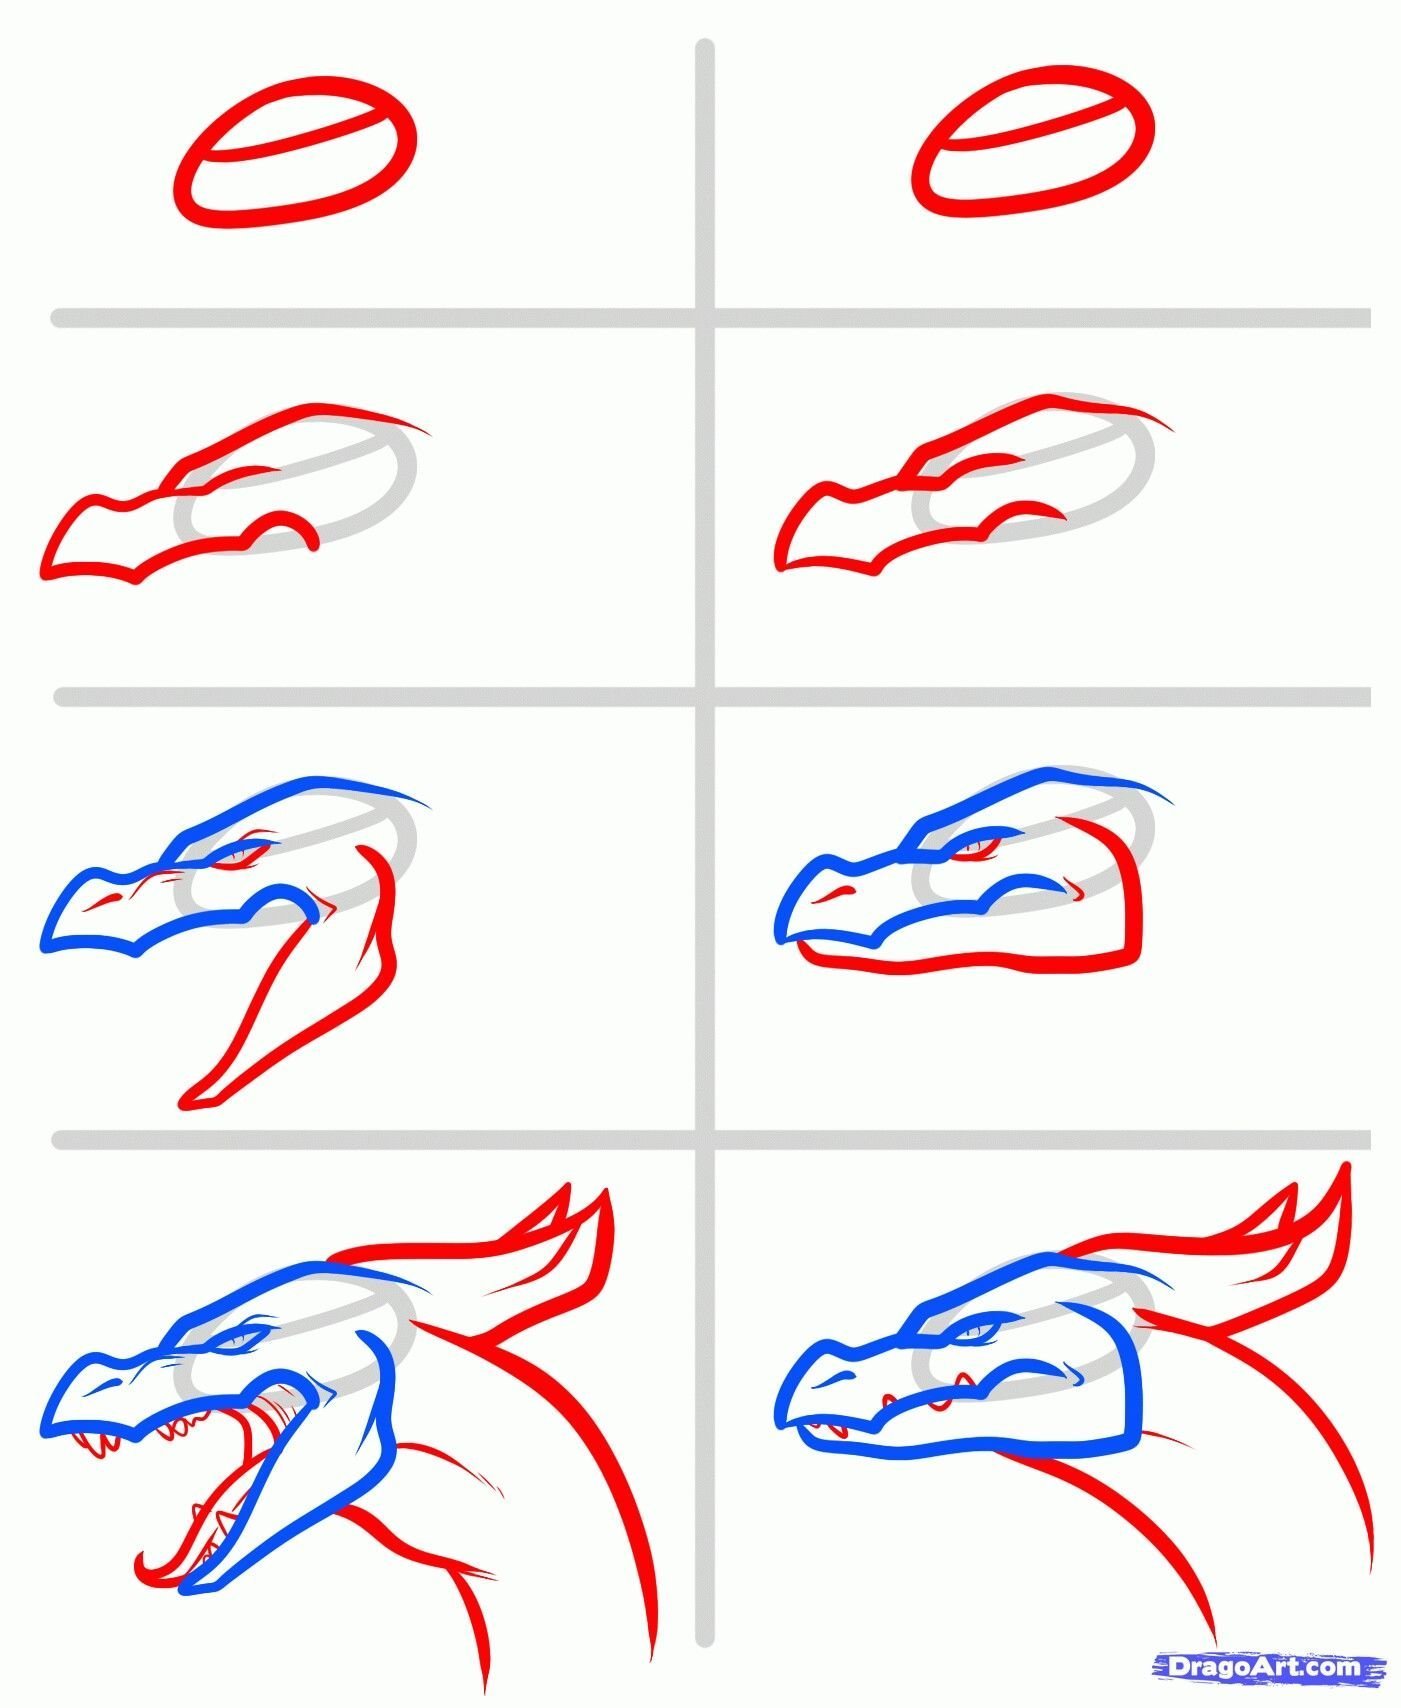 Пошаговые рисунки драконов